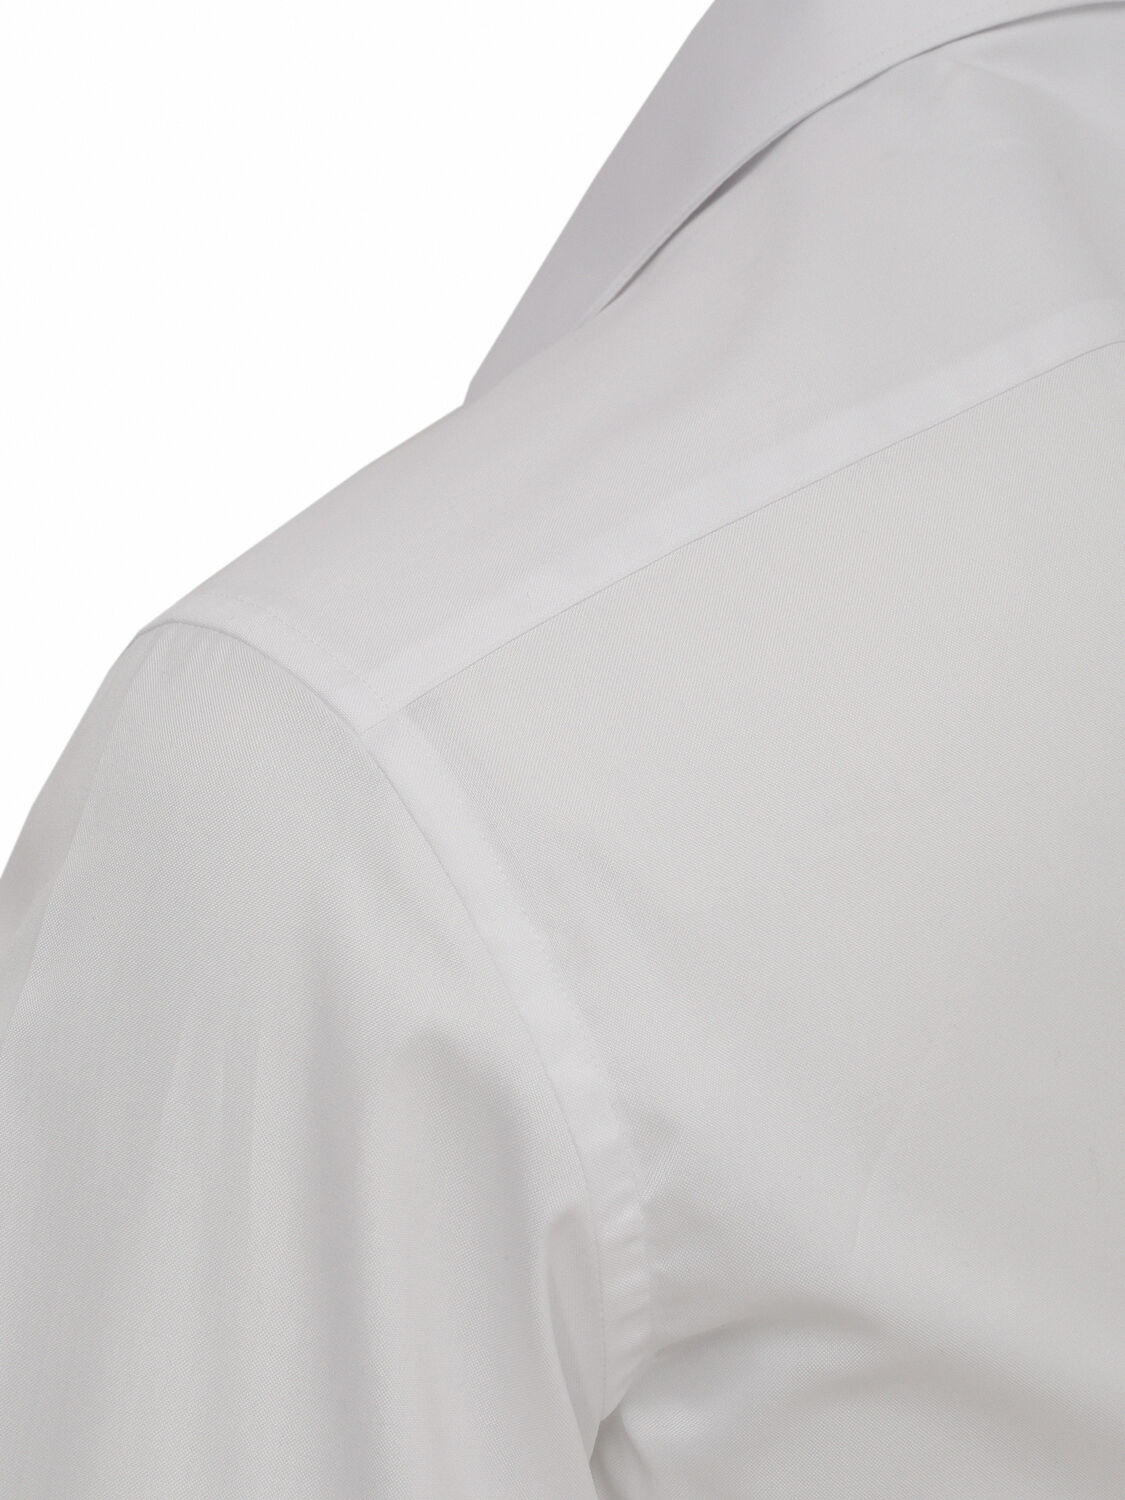 Beyaz Düz Regular Fit Dokuma Klasik %100 Pamuk Gömlek